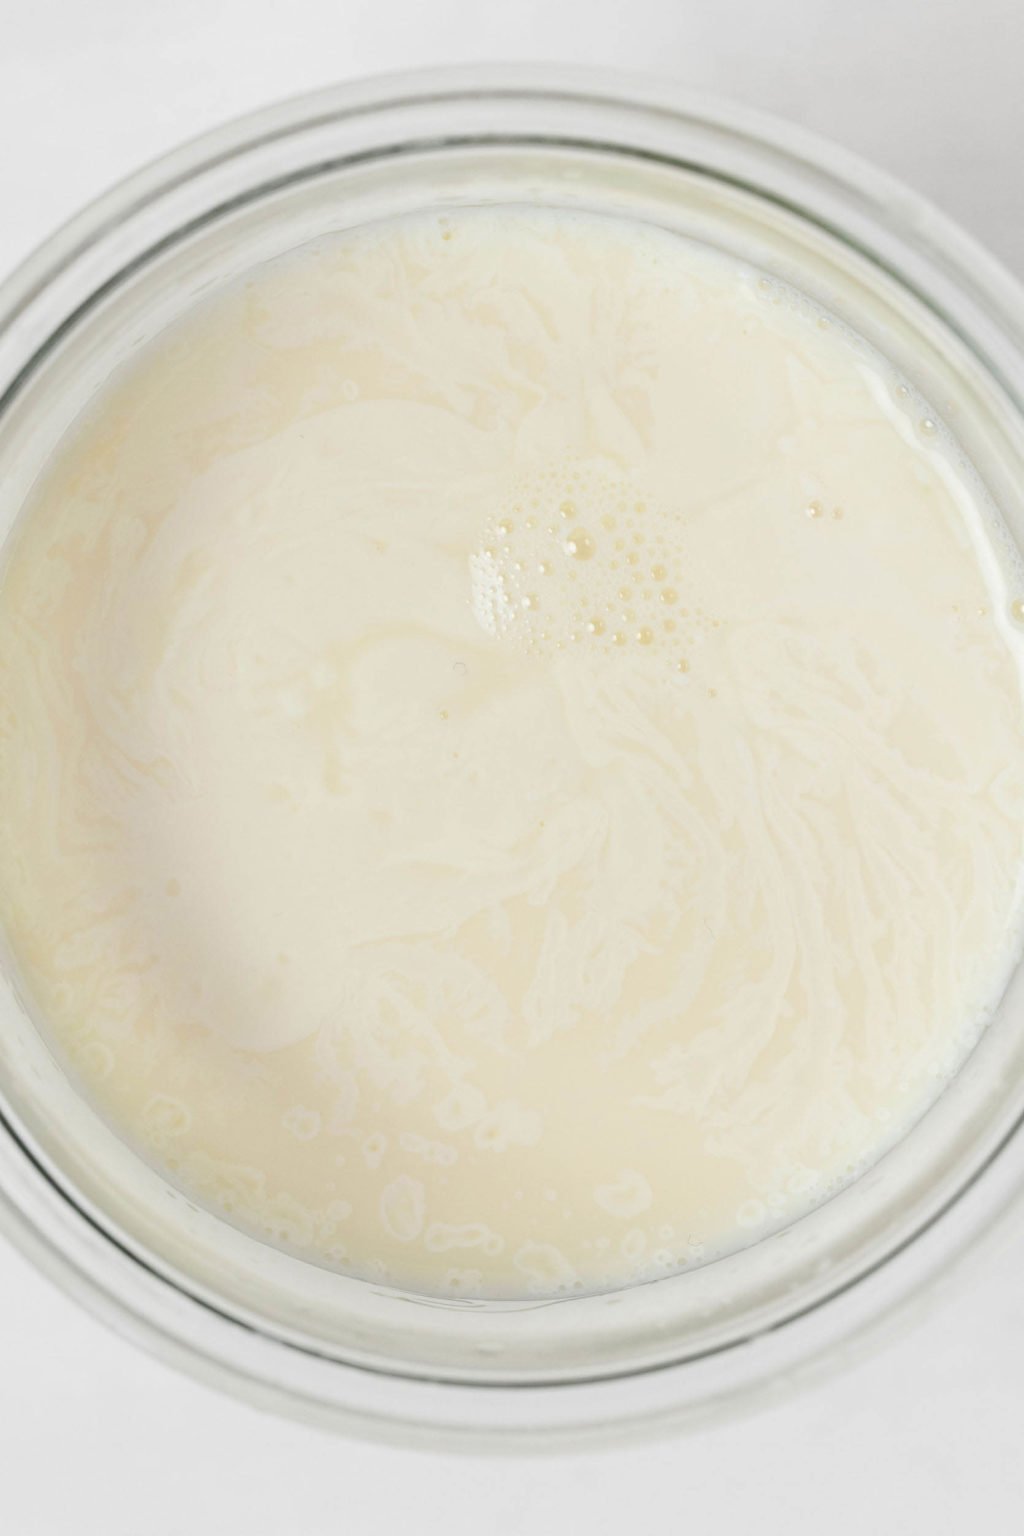 Una imagen superior de la leche en un cuenco de cristal.